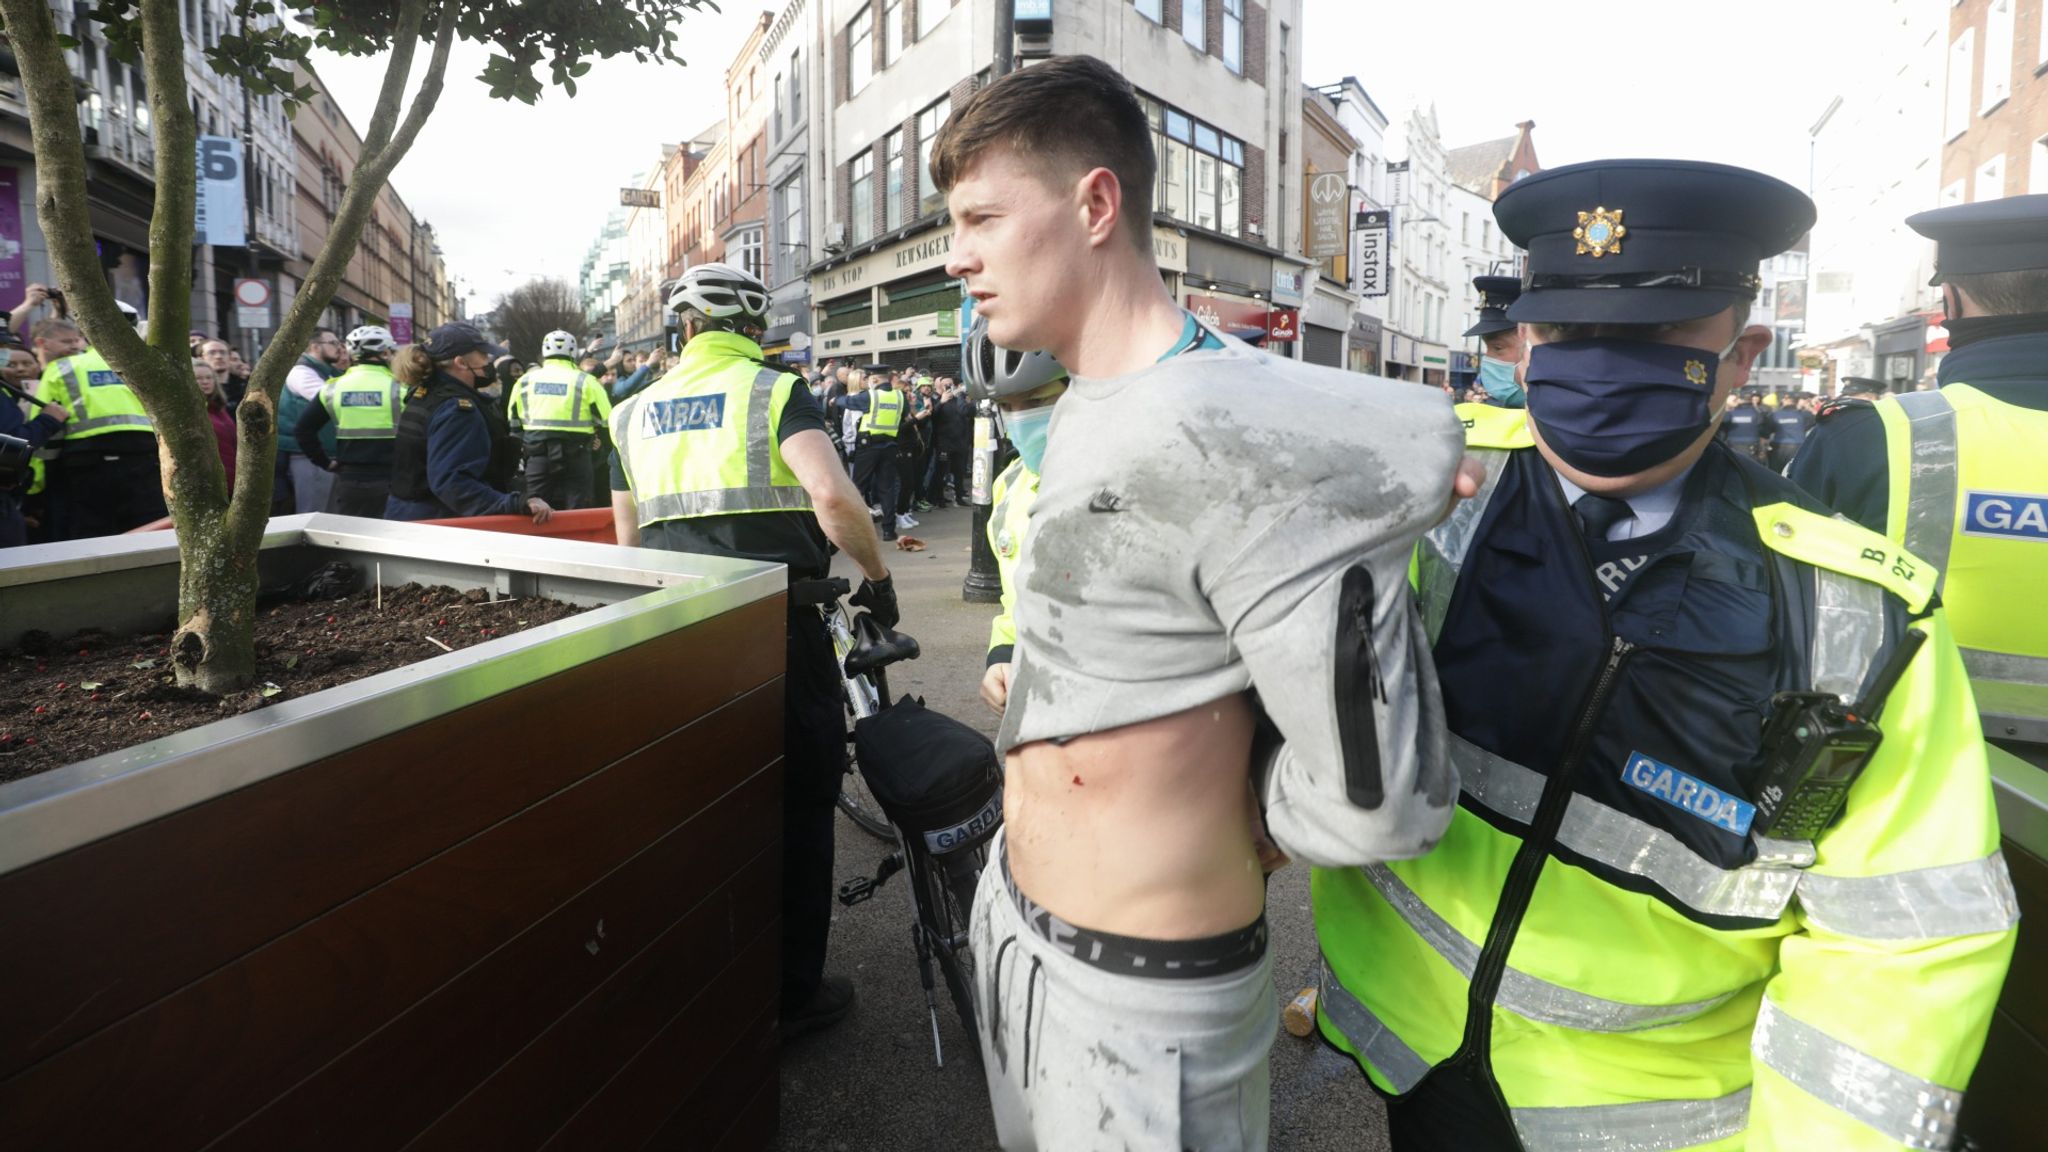 Arrests made after hundreds gather for antilockdown protests in Dublin